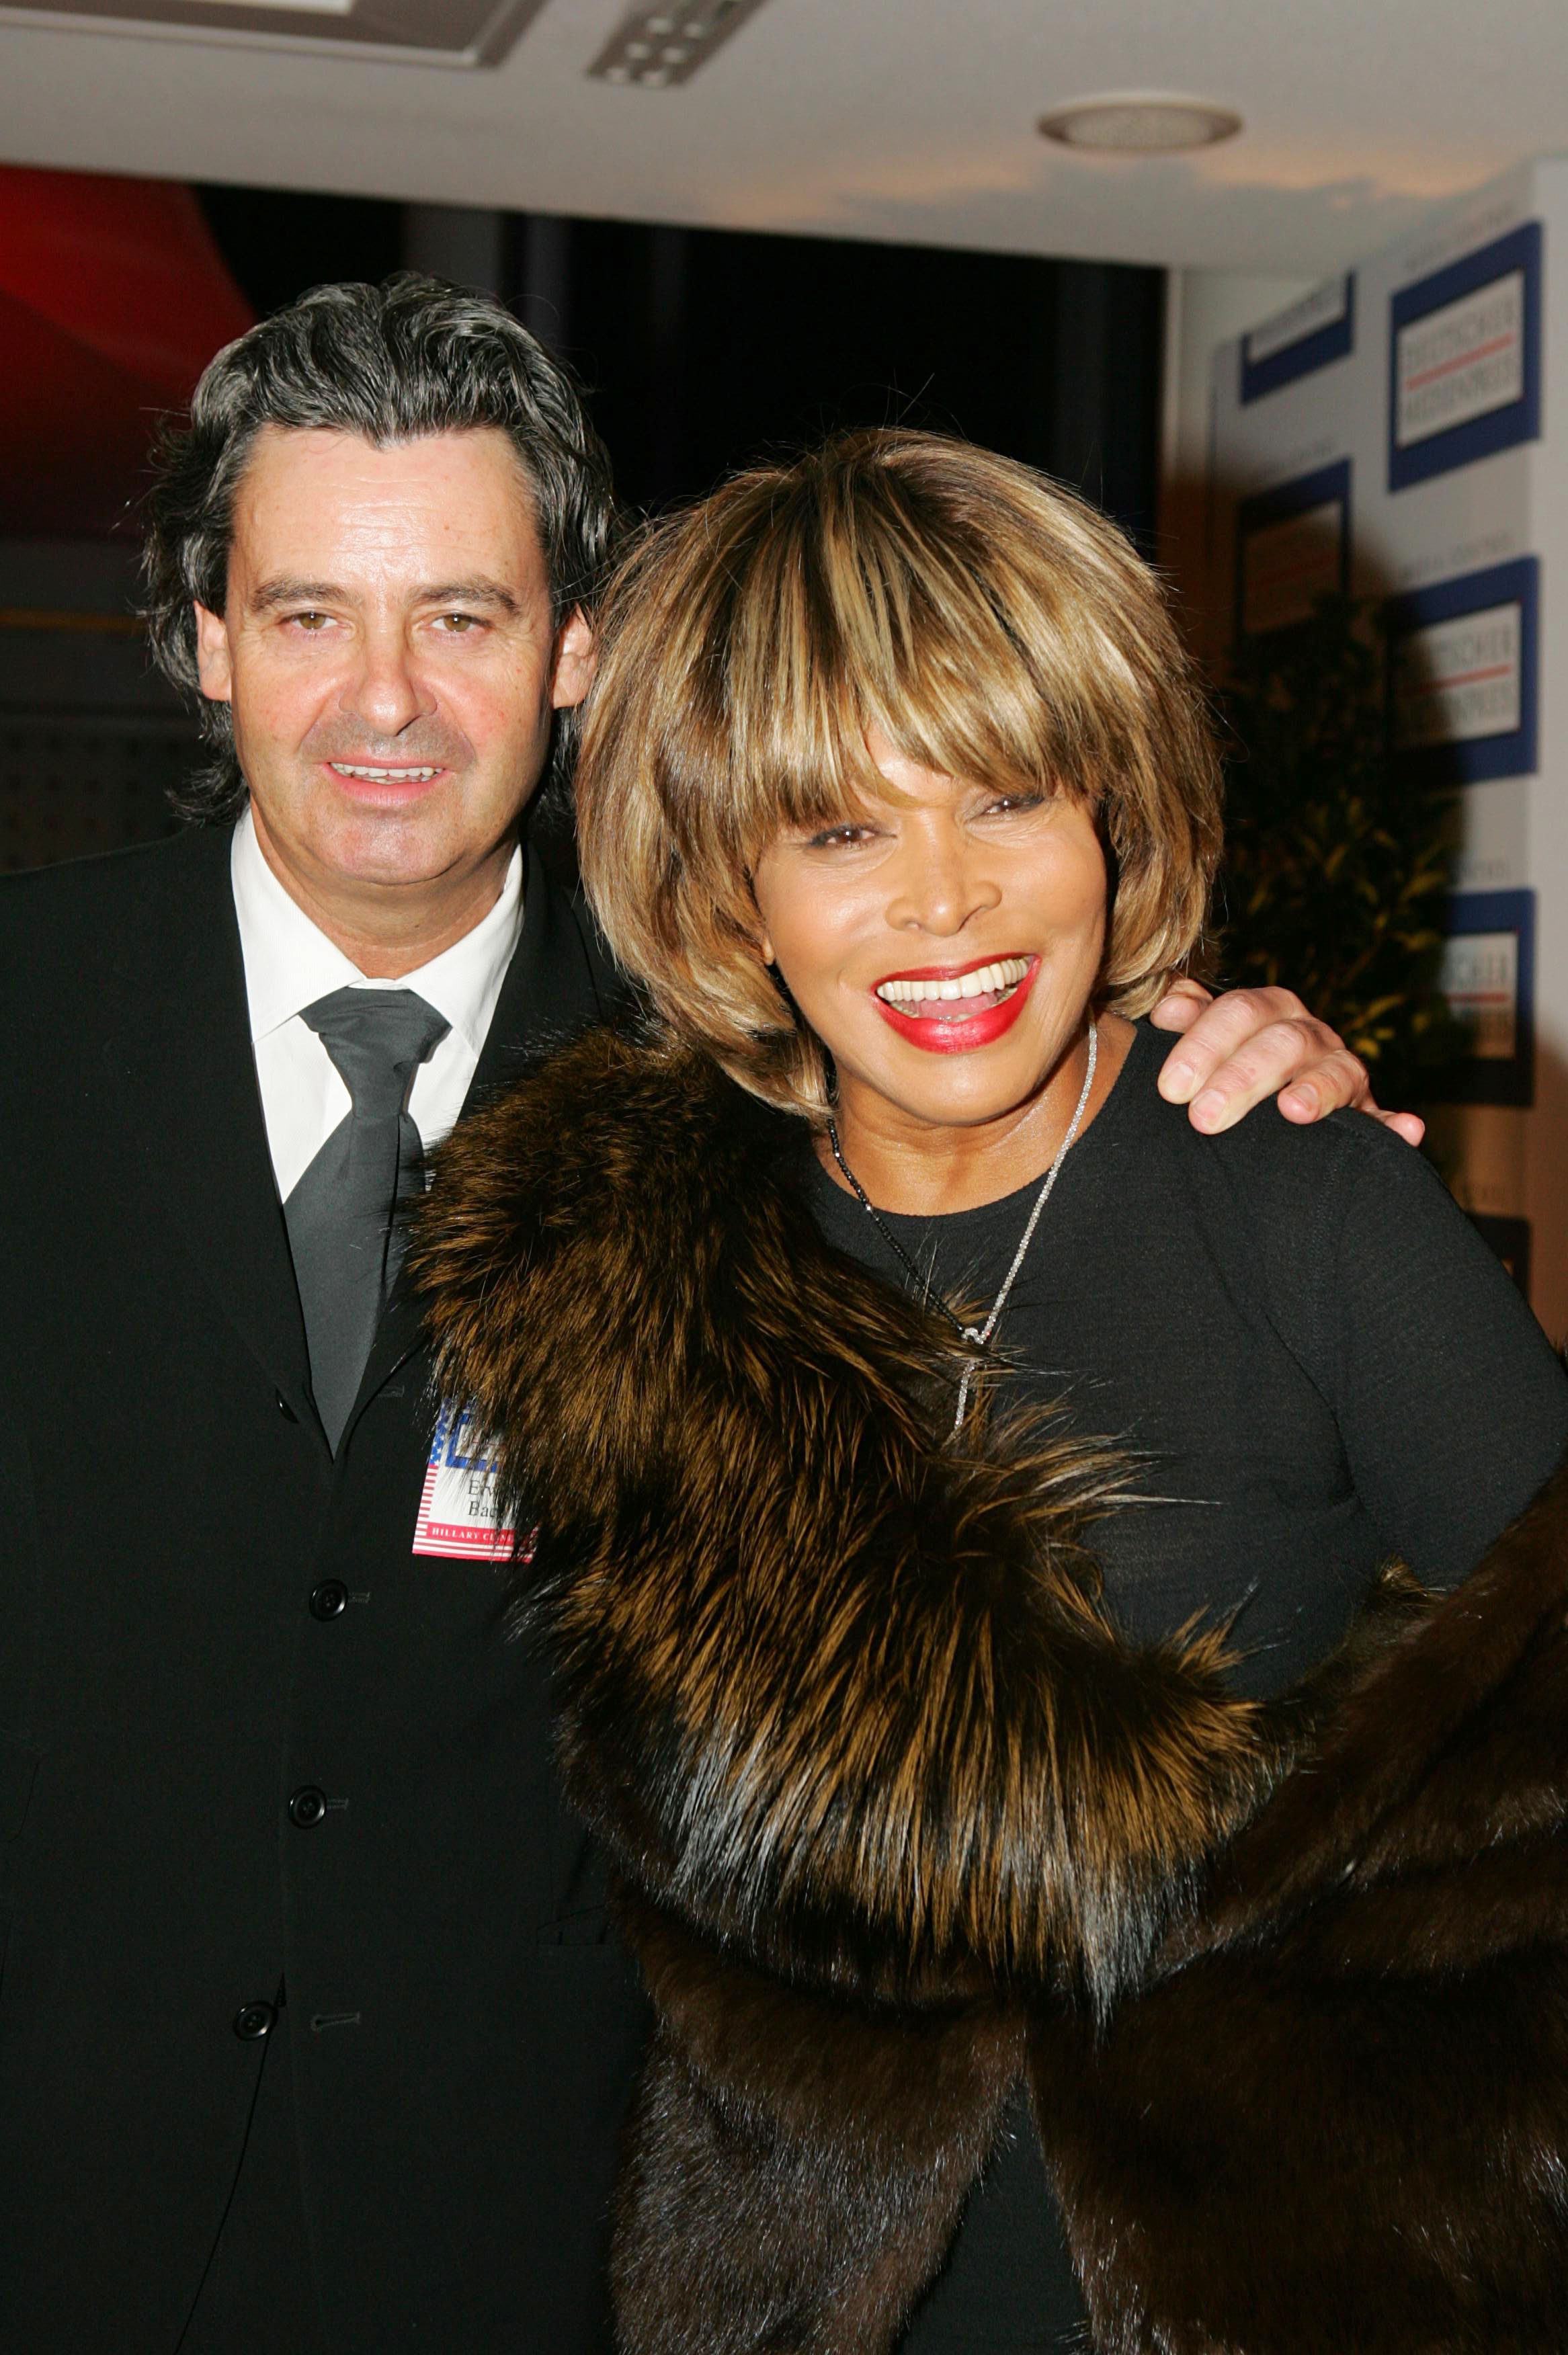 Erwin Bach et Tina Turner lors de l'événement "Deutschen Medienpreis" en 2005 | Source : Getty Images